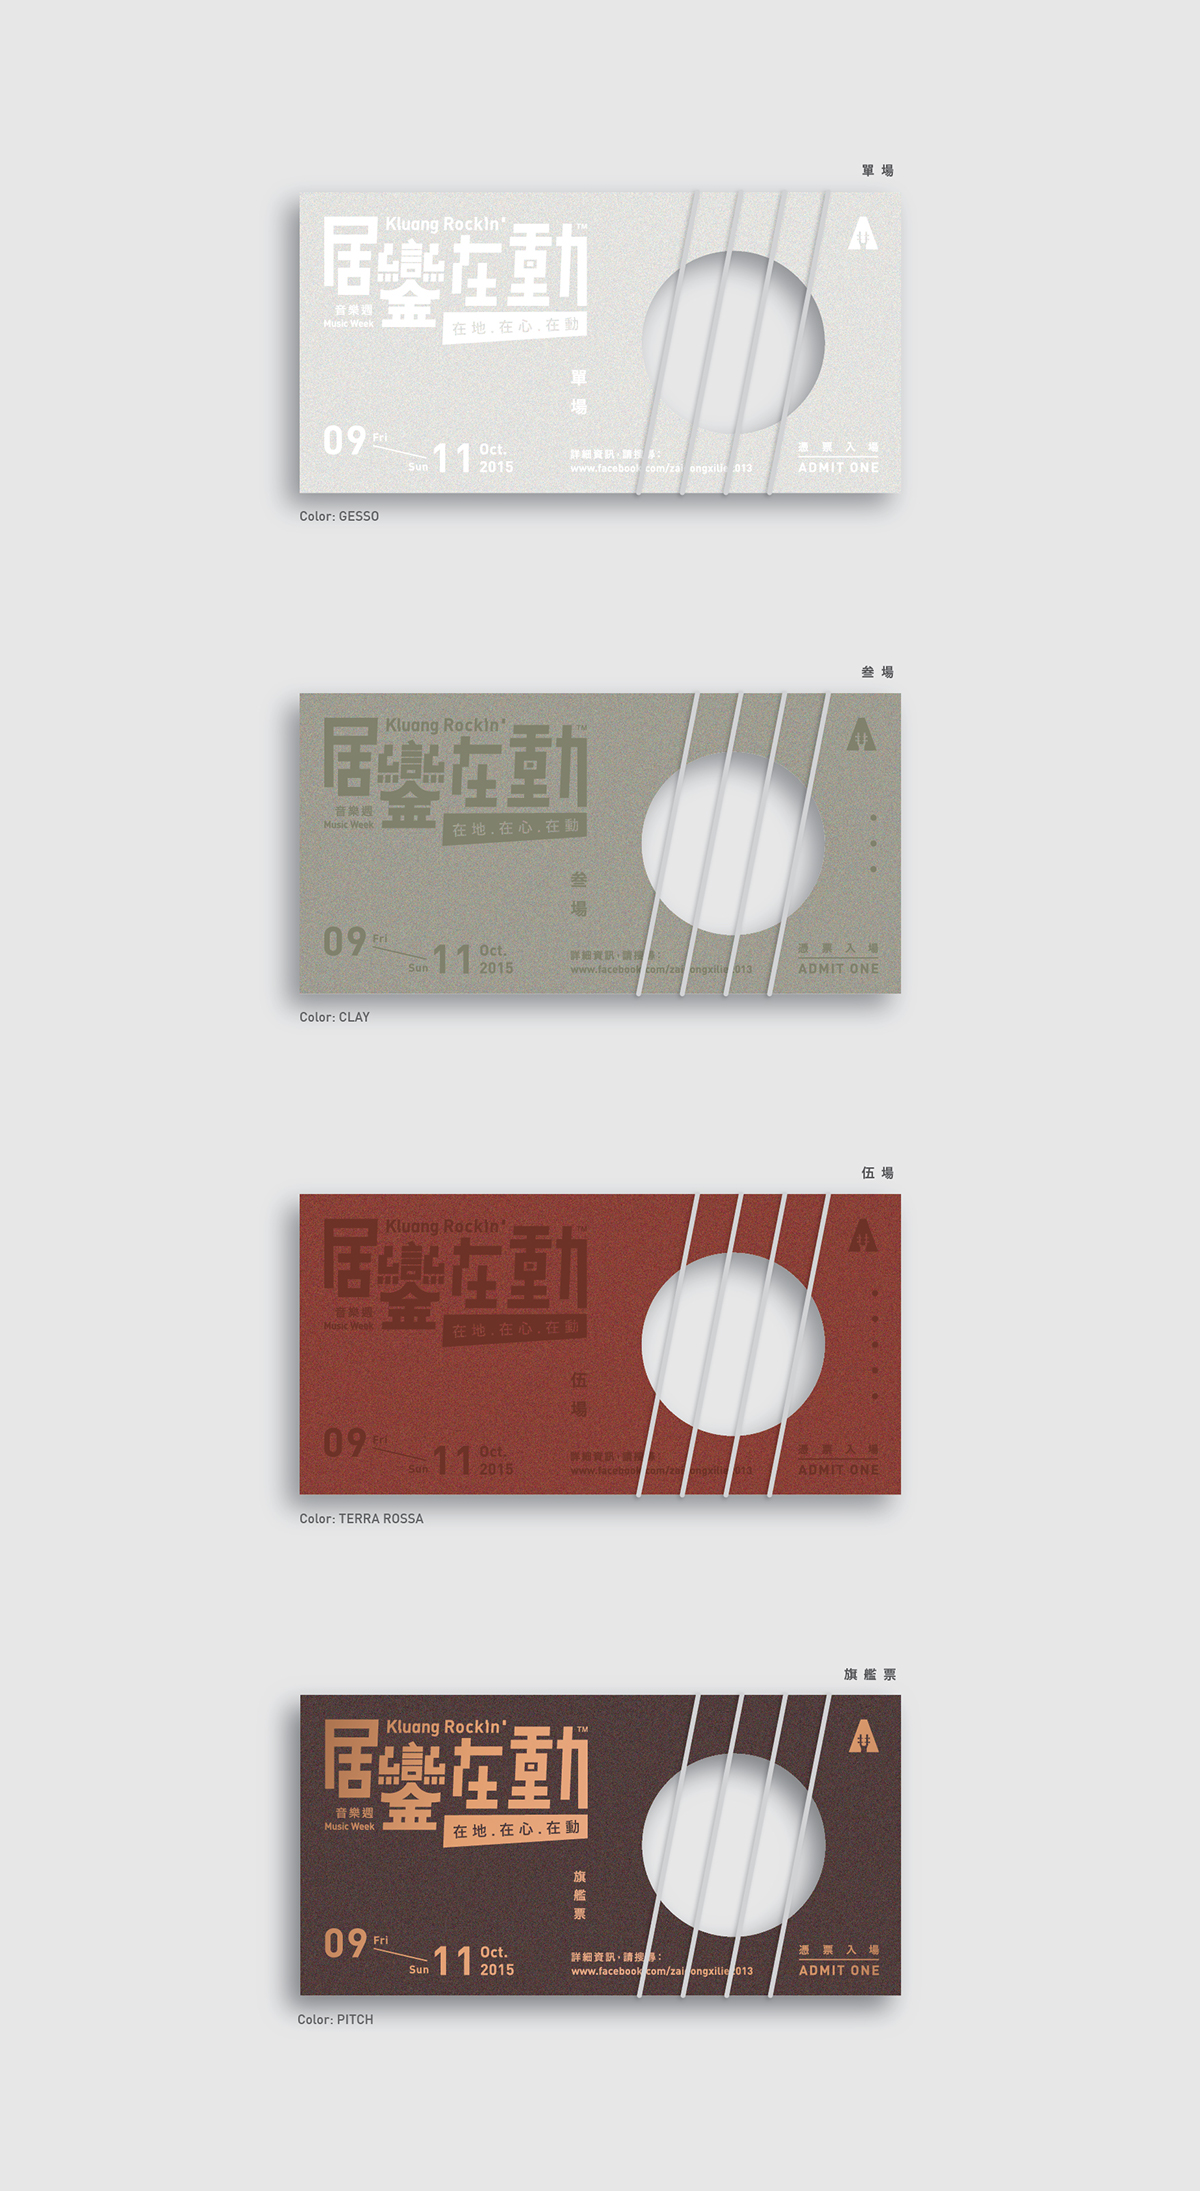 居鑾在動 kluang rocking festival Musical chinese ticket rubberband letterpress card typo Logotype